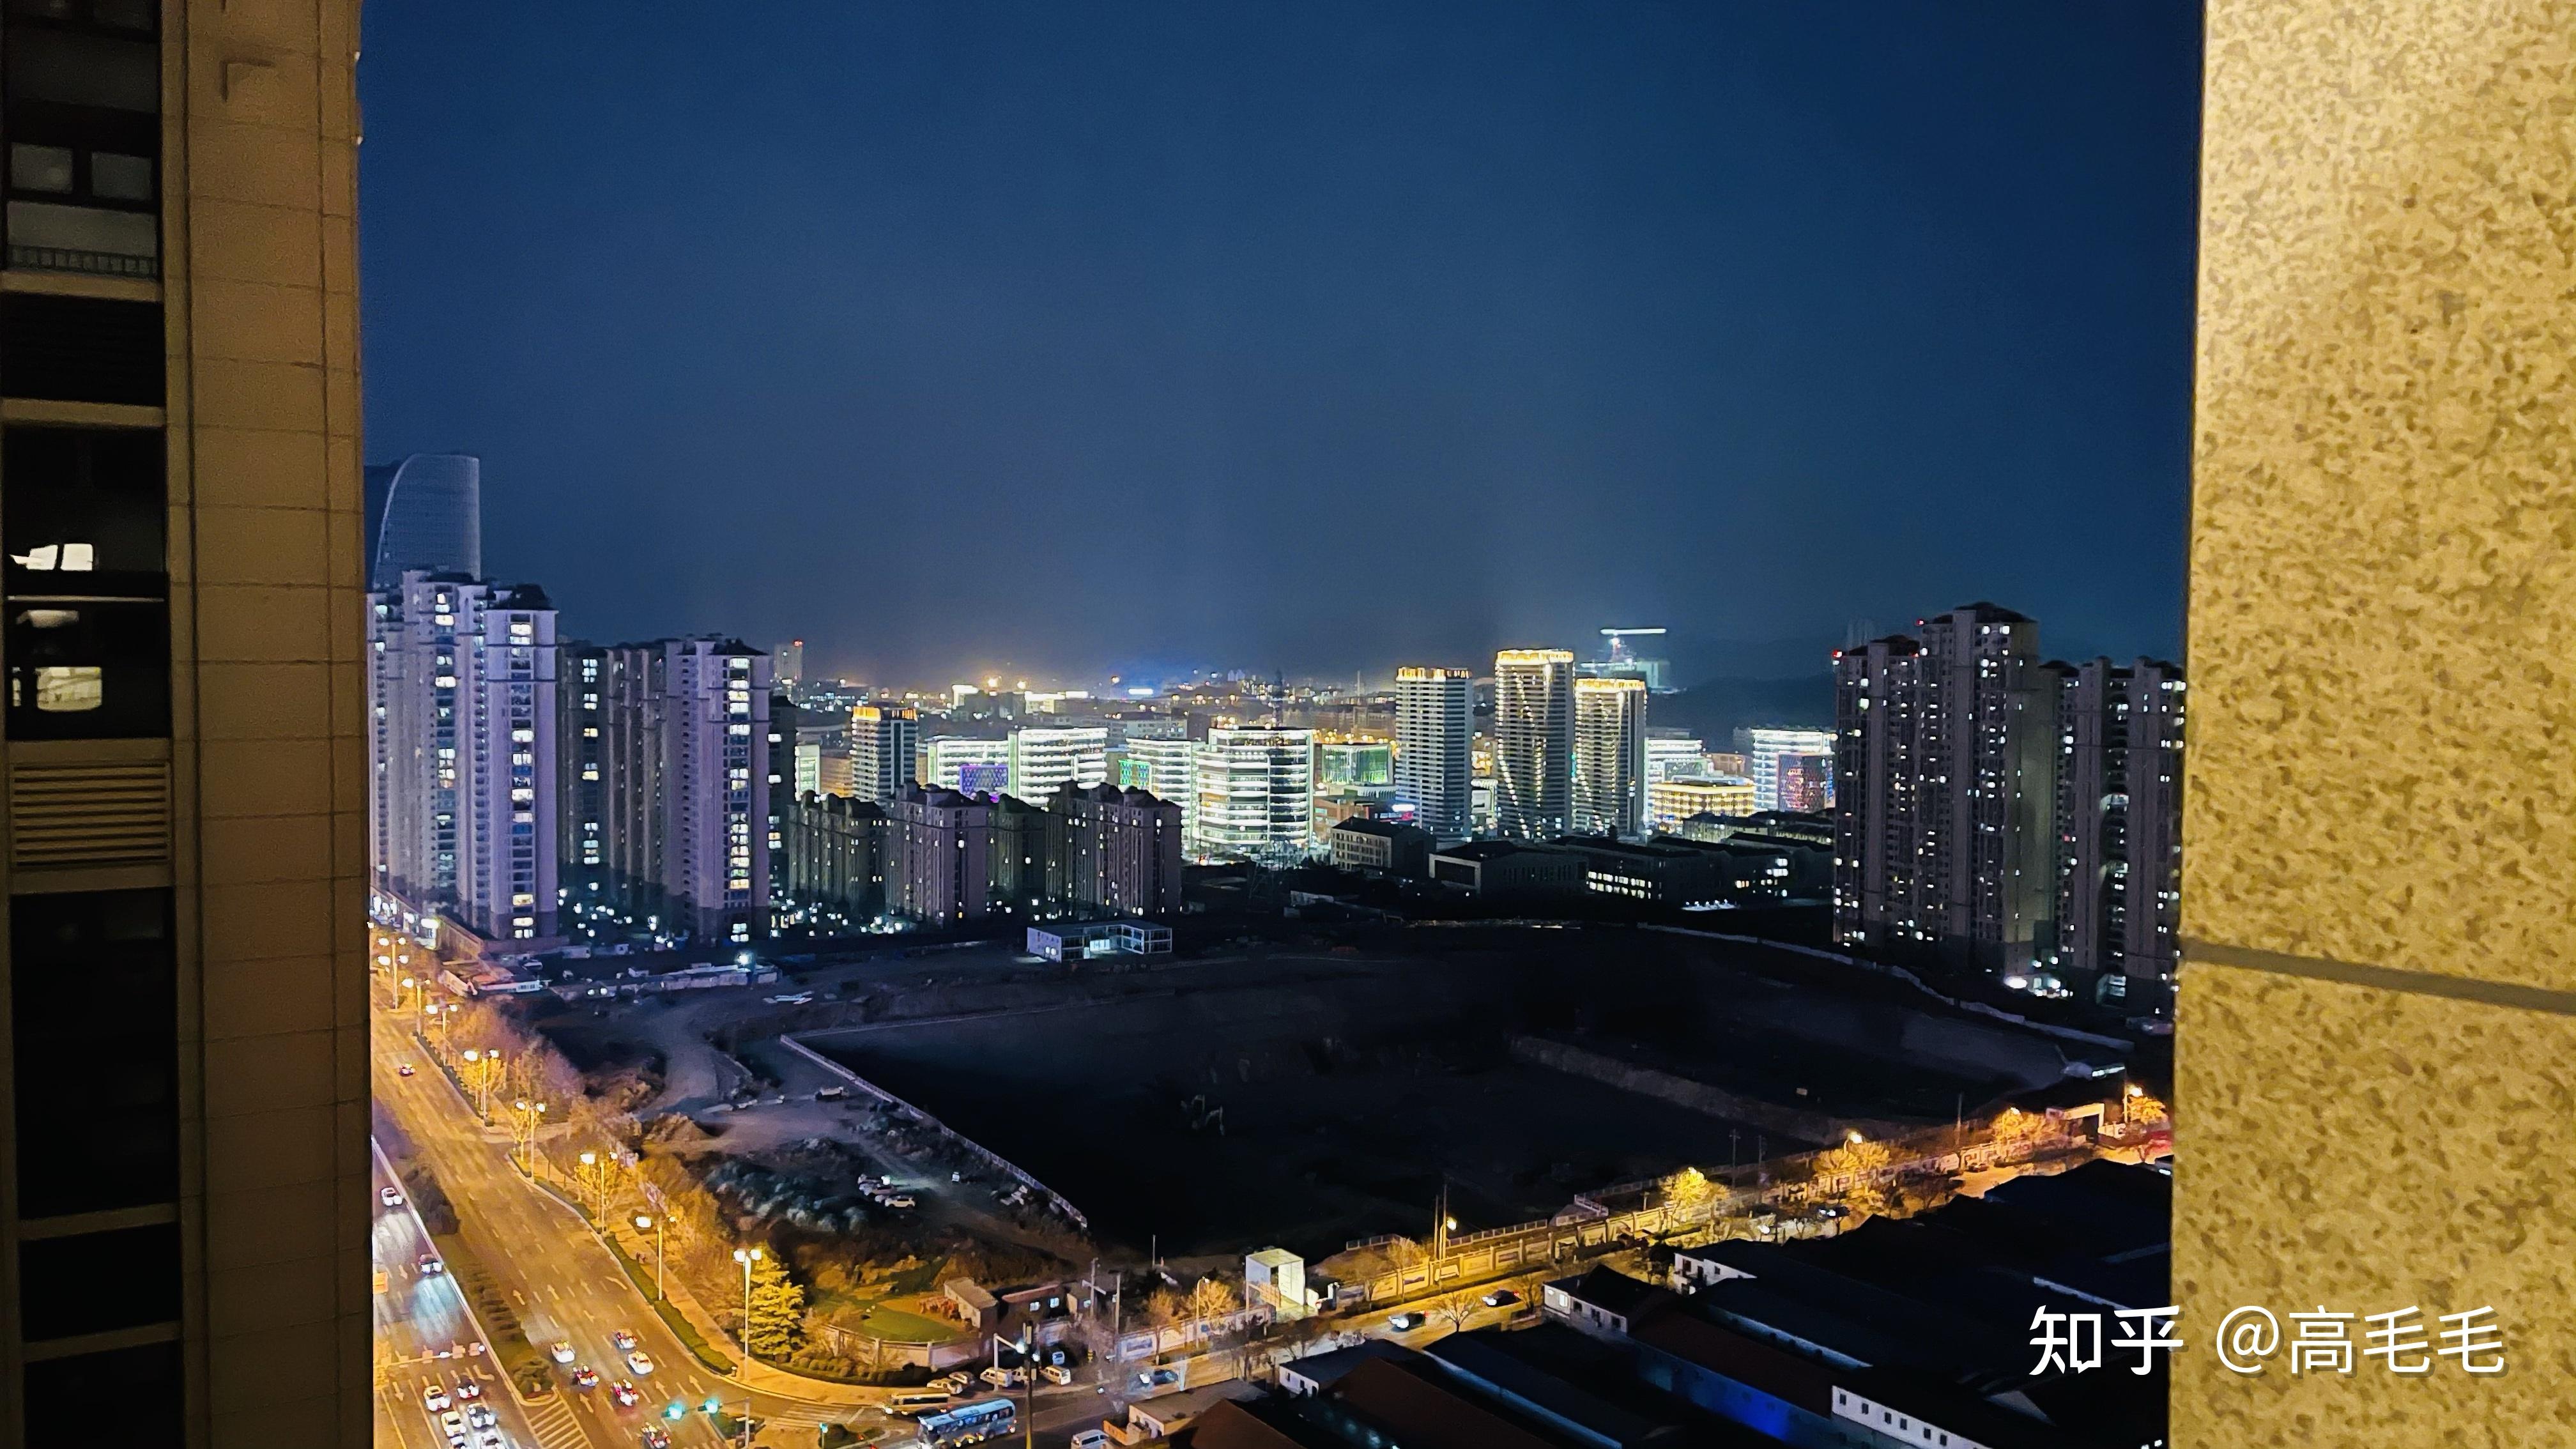 在青岛如何能花最少的钱俯瞰城市夜景?